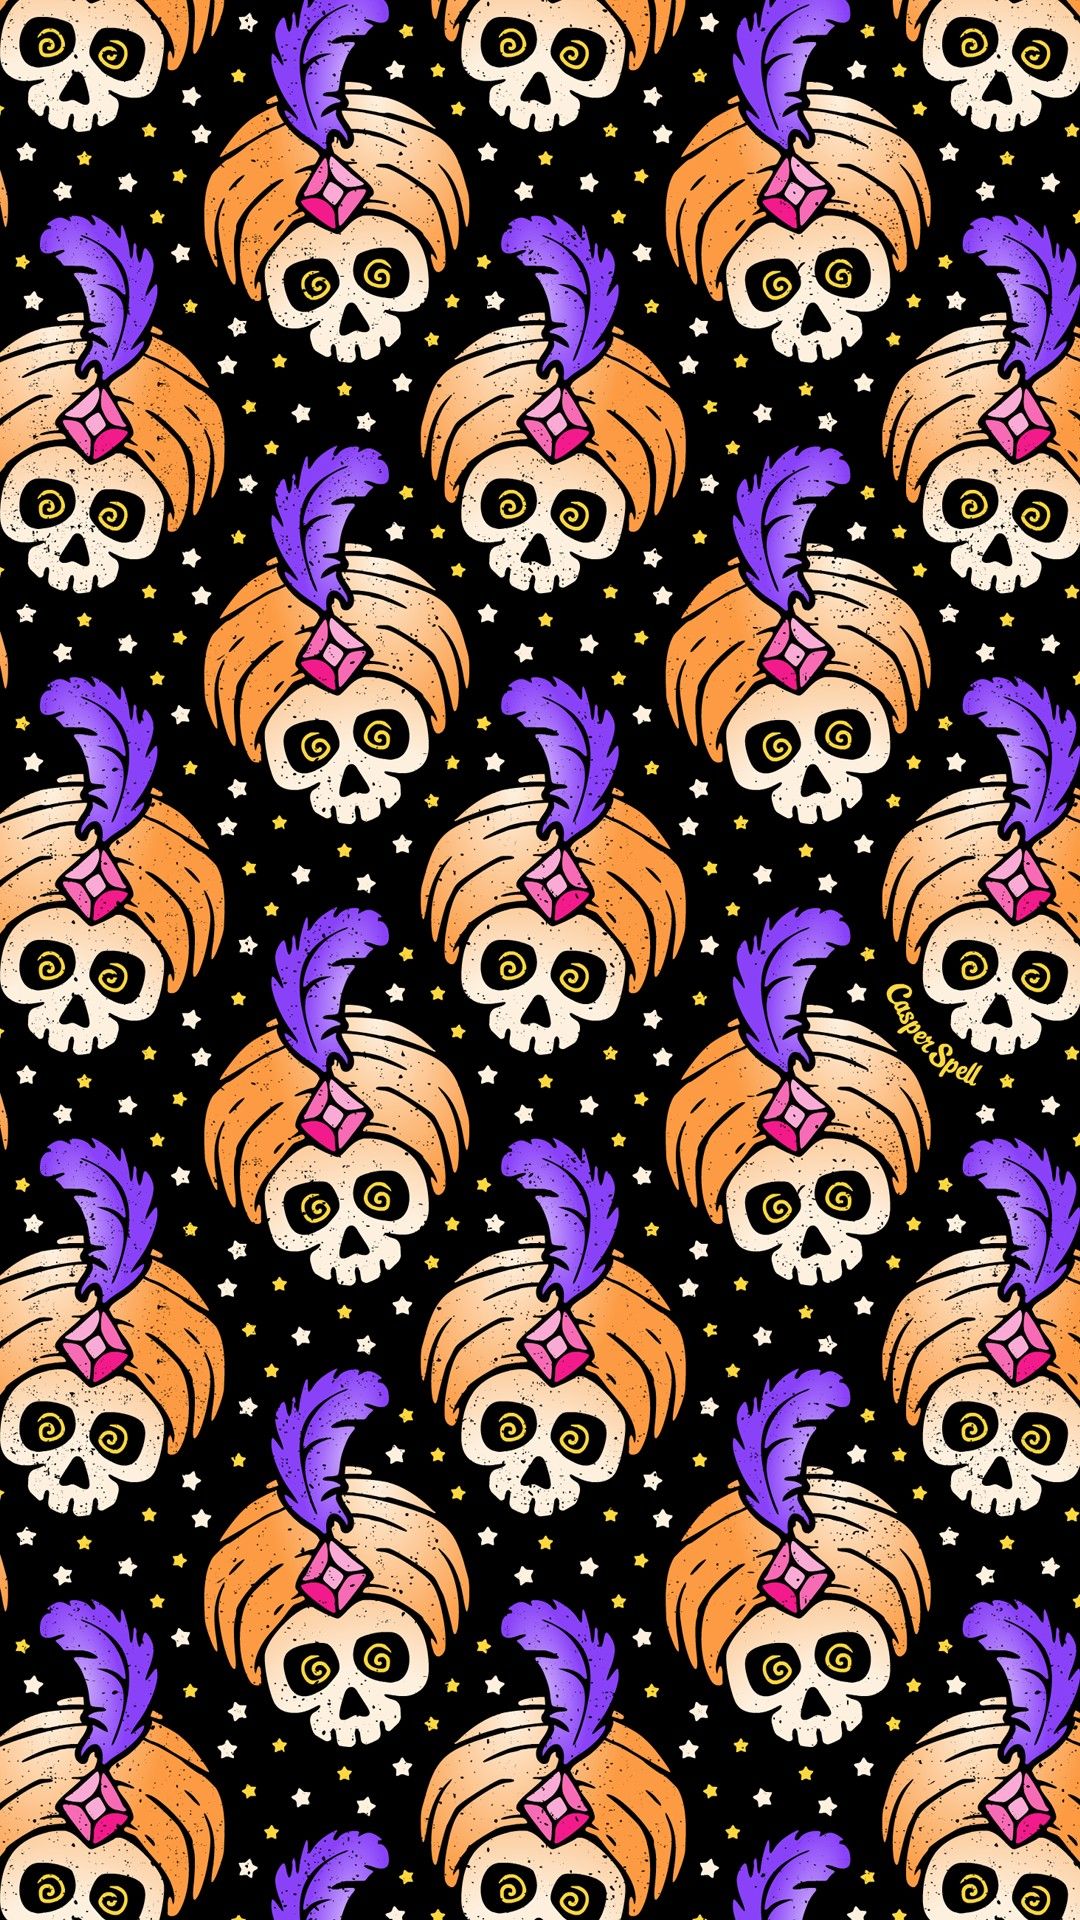 Fortune Teller Skulls. Halloween wallpaper iphone background, Halloween wallpaper background, Halloween background